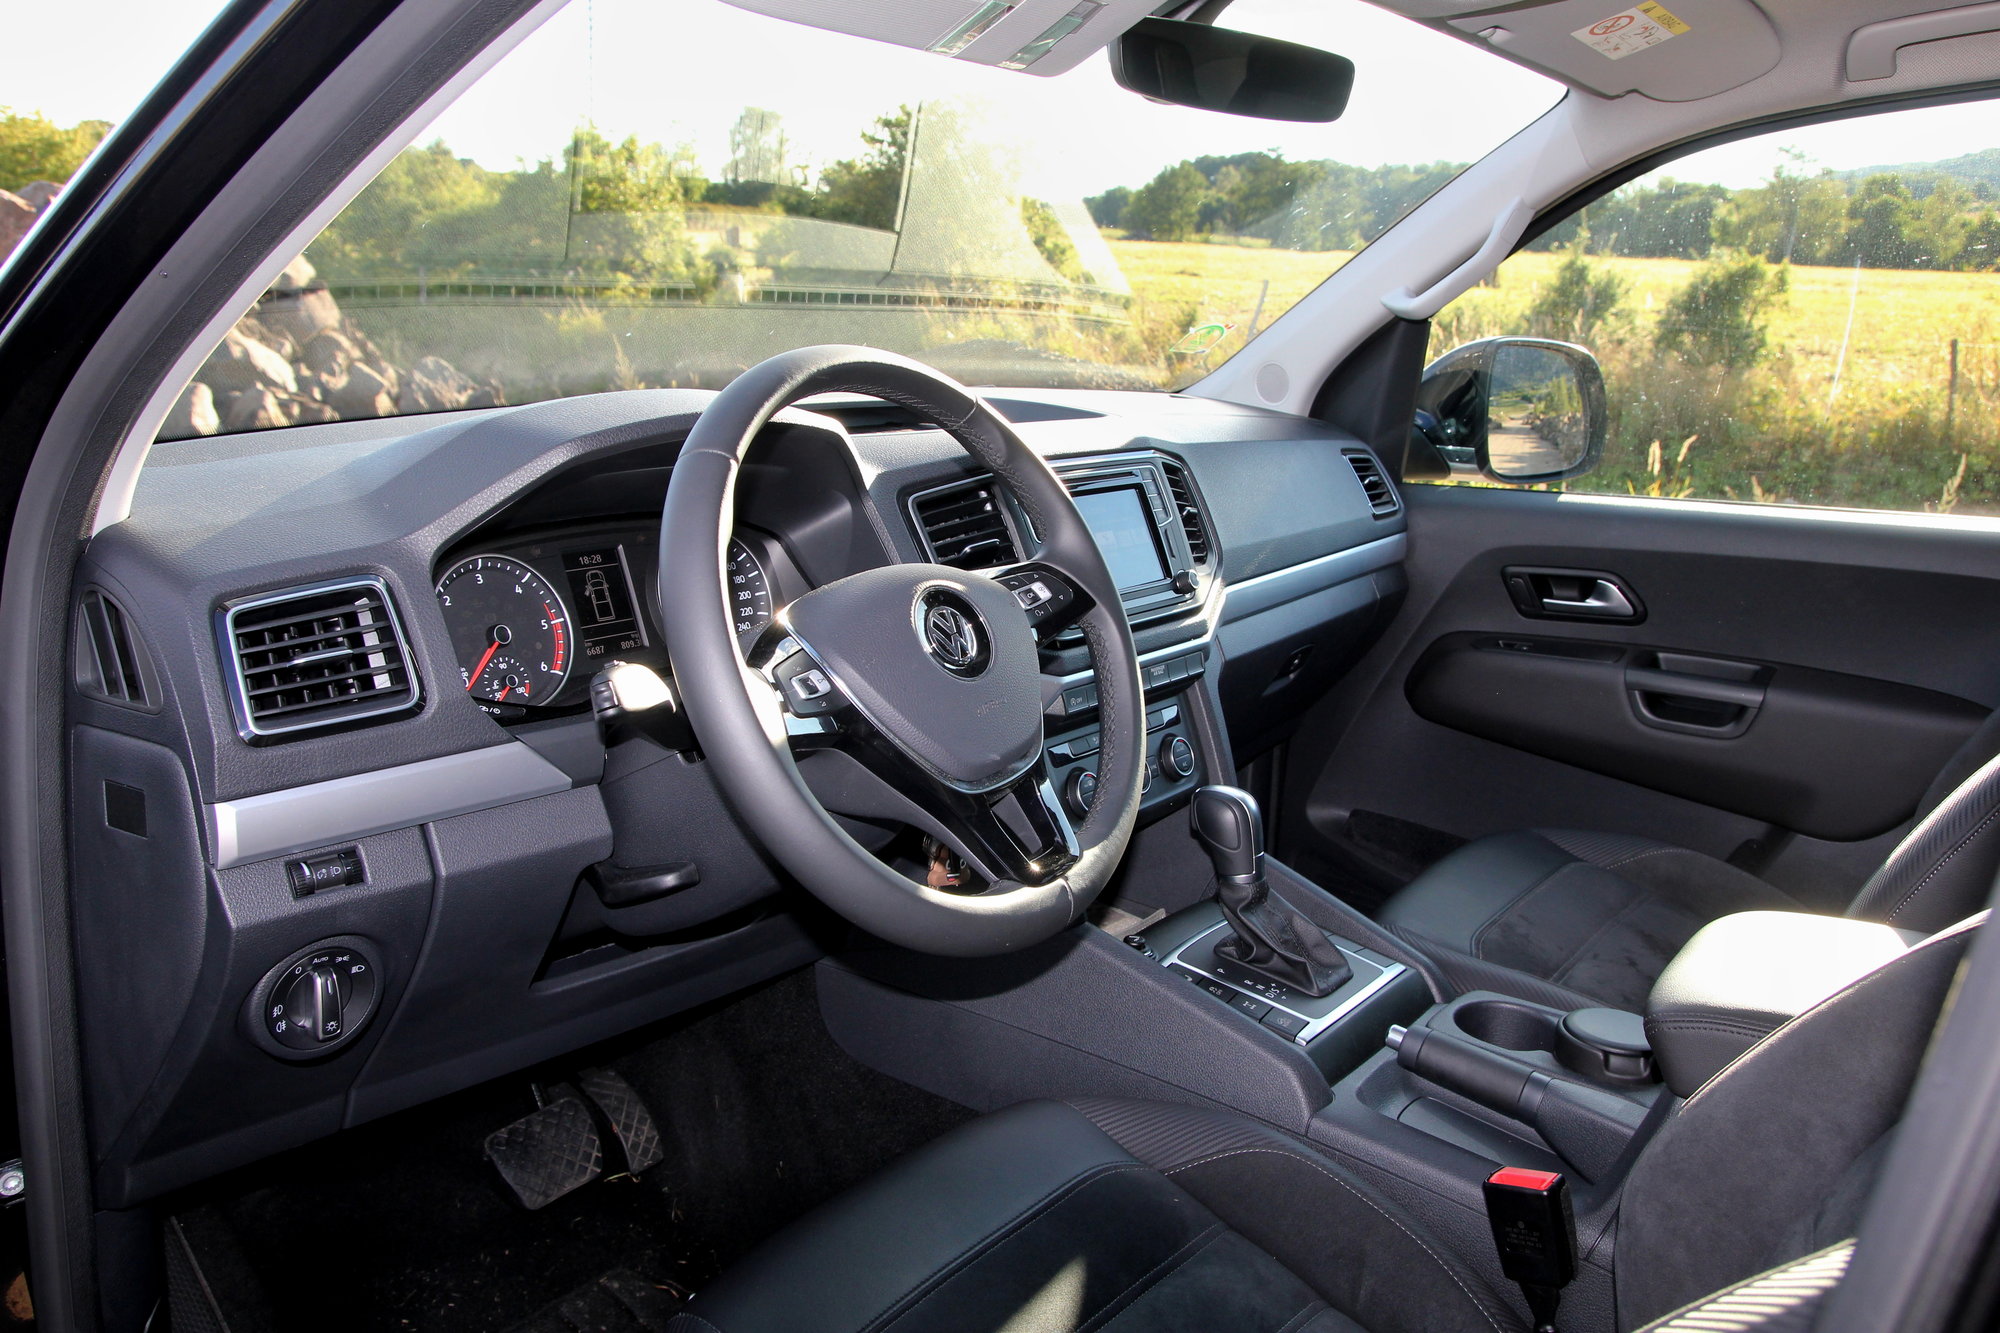 Volkswagen Amarok 3,0 TDI V6 4Motion